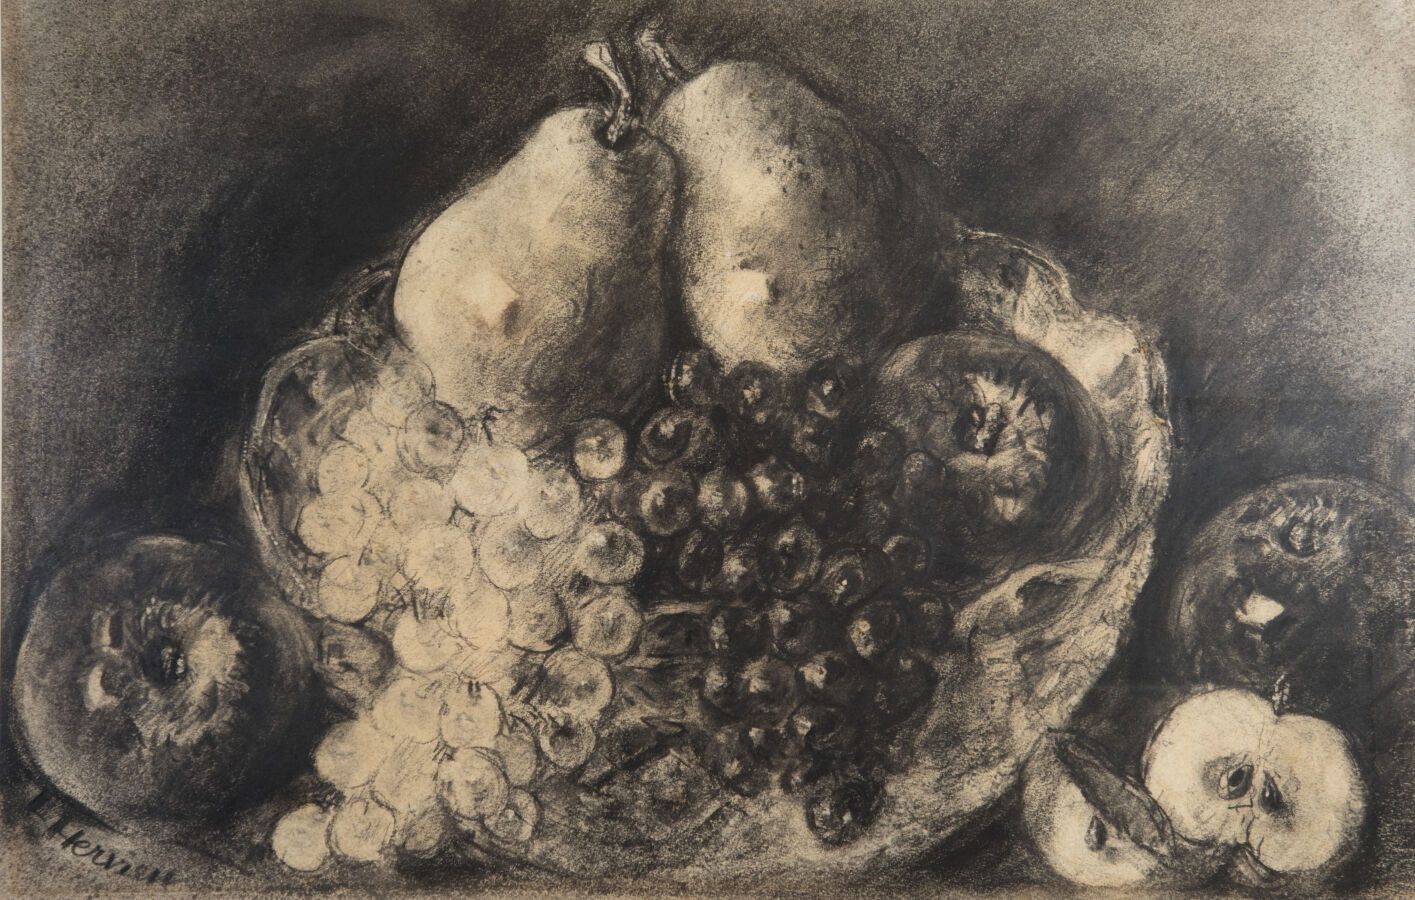 Null 赫维埃-路易丝 (1878-1954)

梨子、苹果和葡萄的静物画

炭笔和树桩画，左下方有签名

高度：30.530.5; 宽度 : 47.5 cm&hellip;